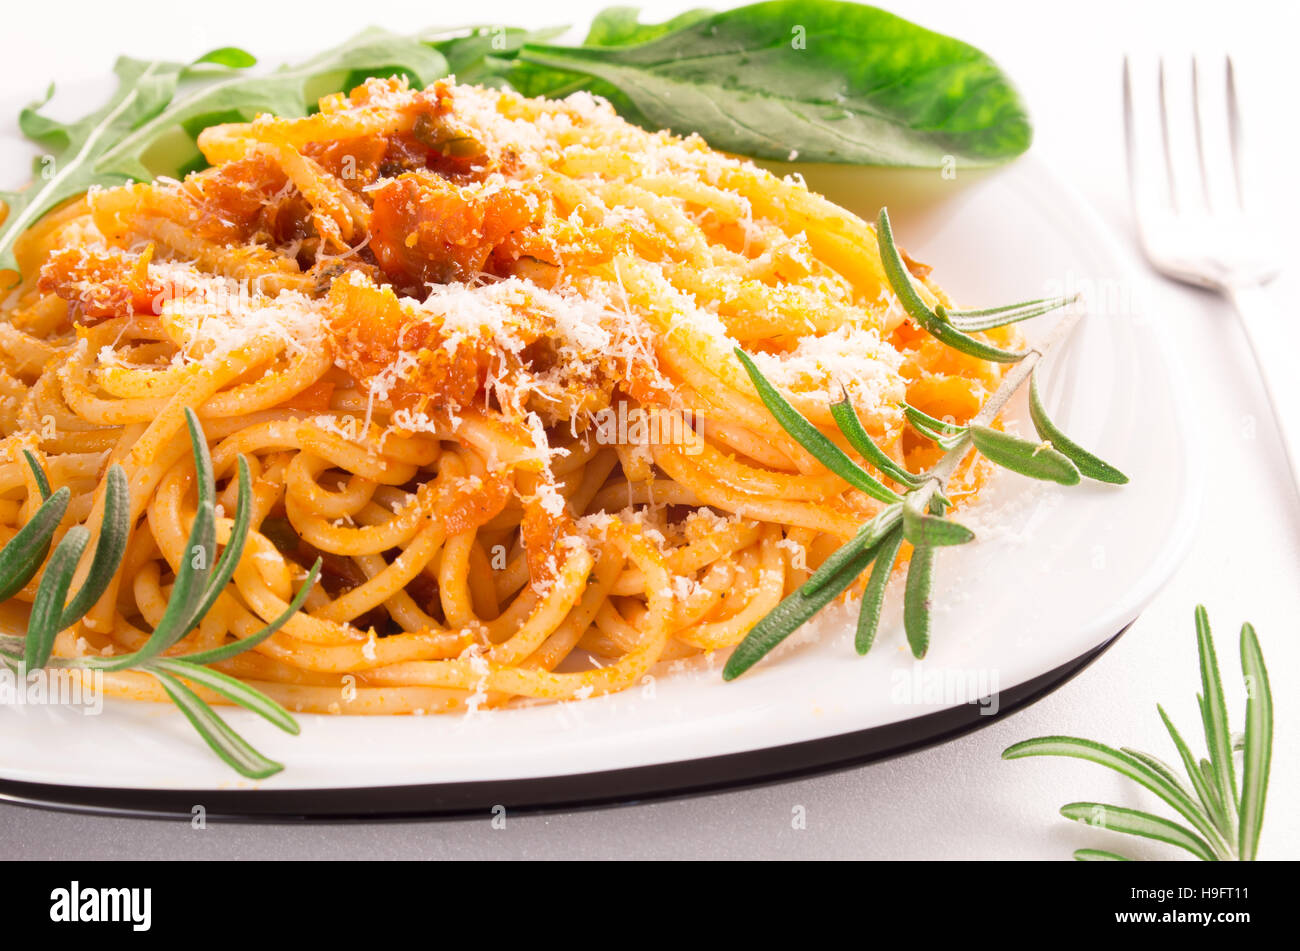 Le spaghetti cuit avec sauce aux légumes, herbes, romarin et parmesan close-up Banque D'Images